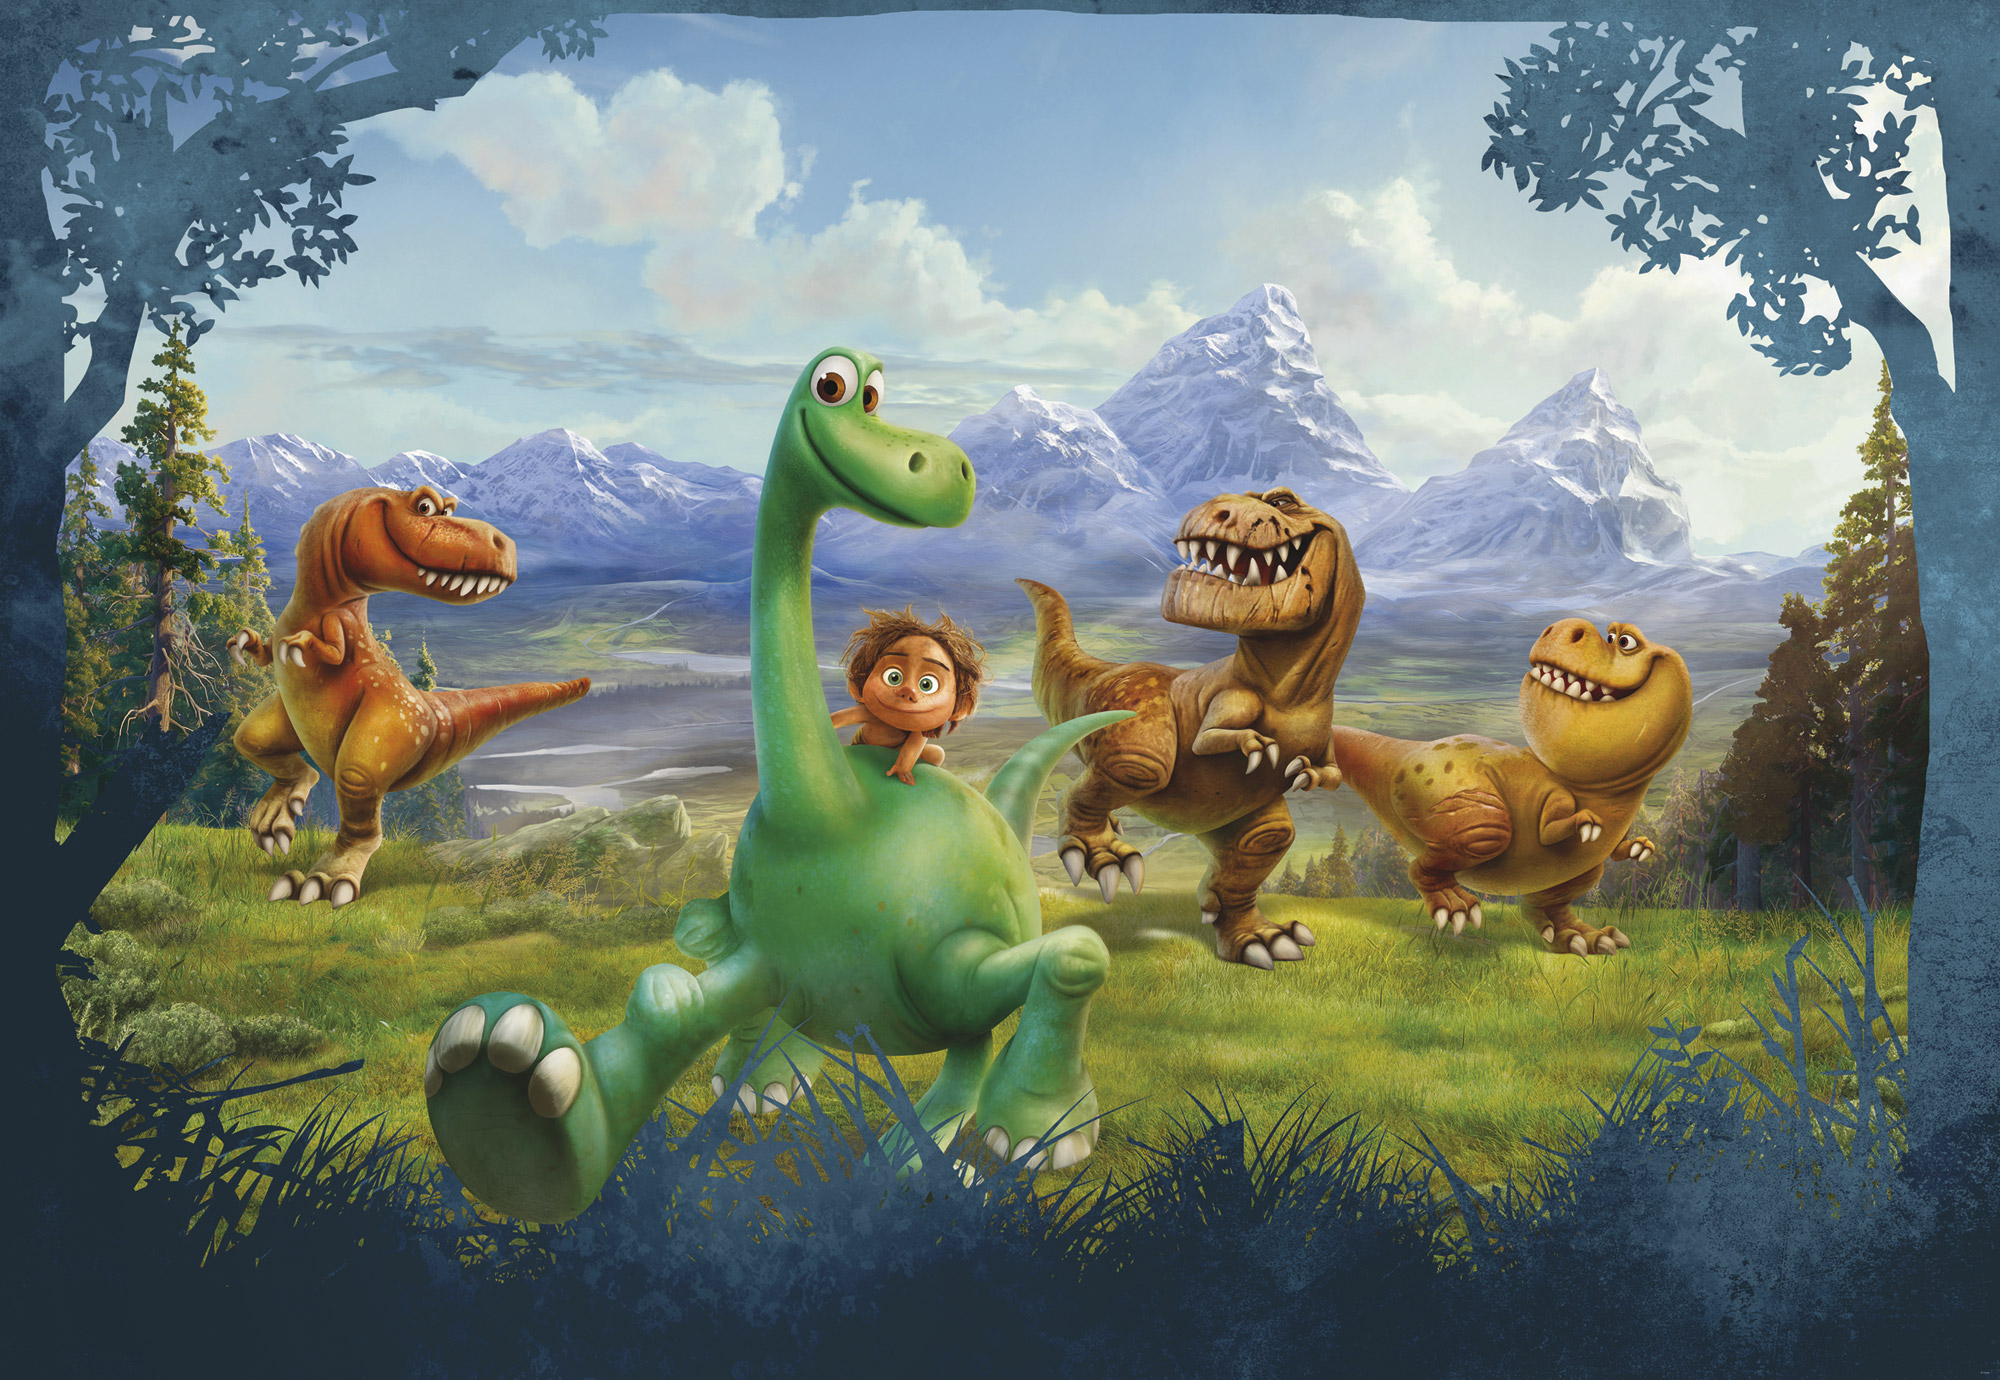 New Trailer for Pixars The Good Dinosaur